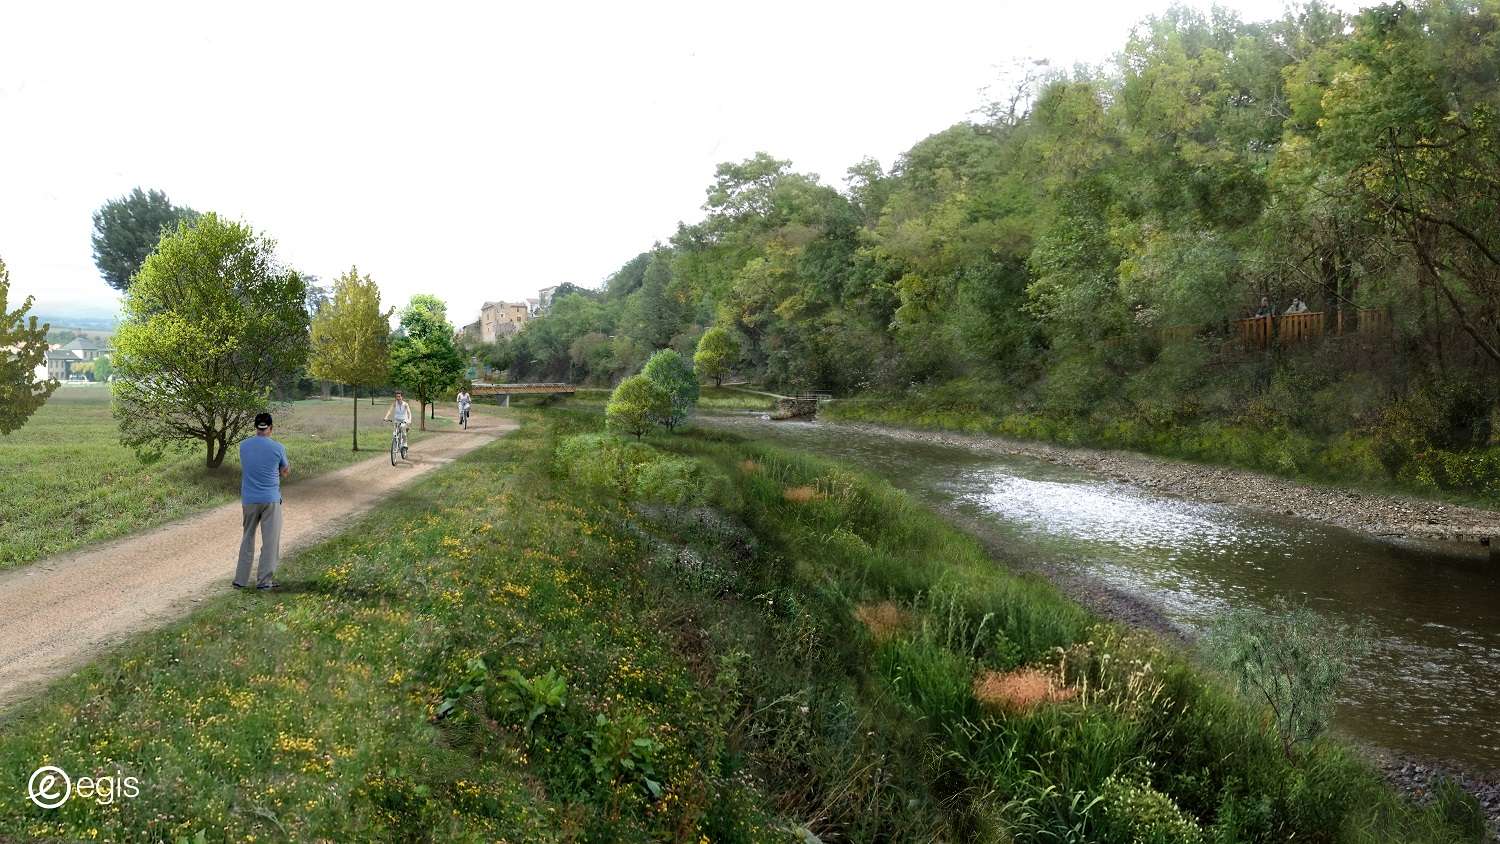   Autorisation environnementale pour la restauration d'une zone d'expansion des crues - Saint-Georges-de-Luzençon